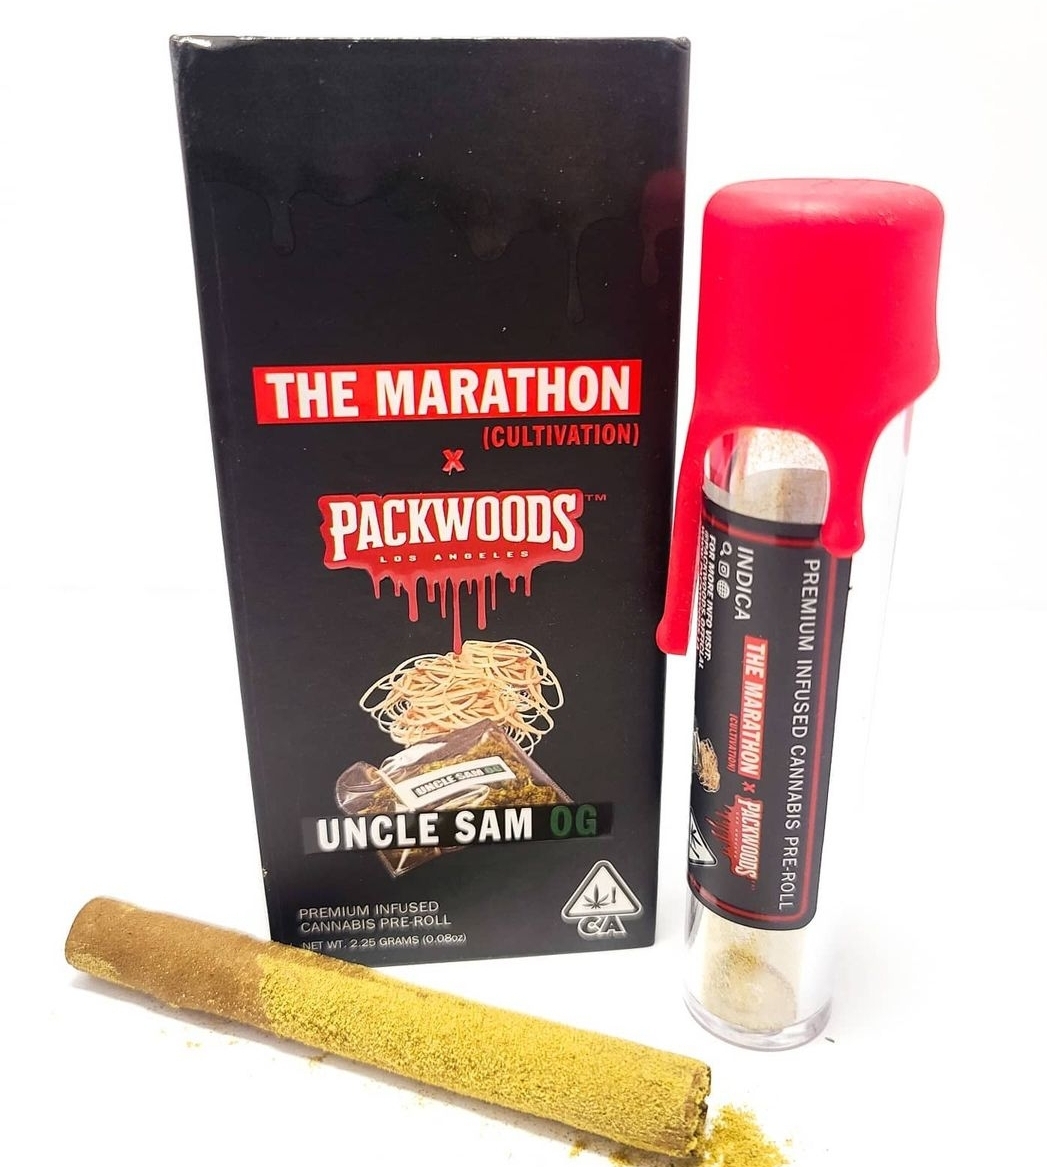 Buy Uncle Sam OG Packwoods Online